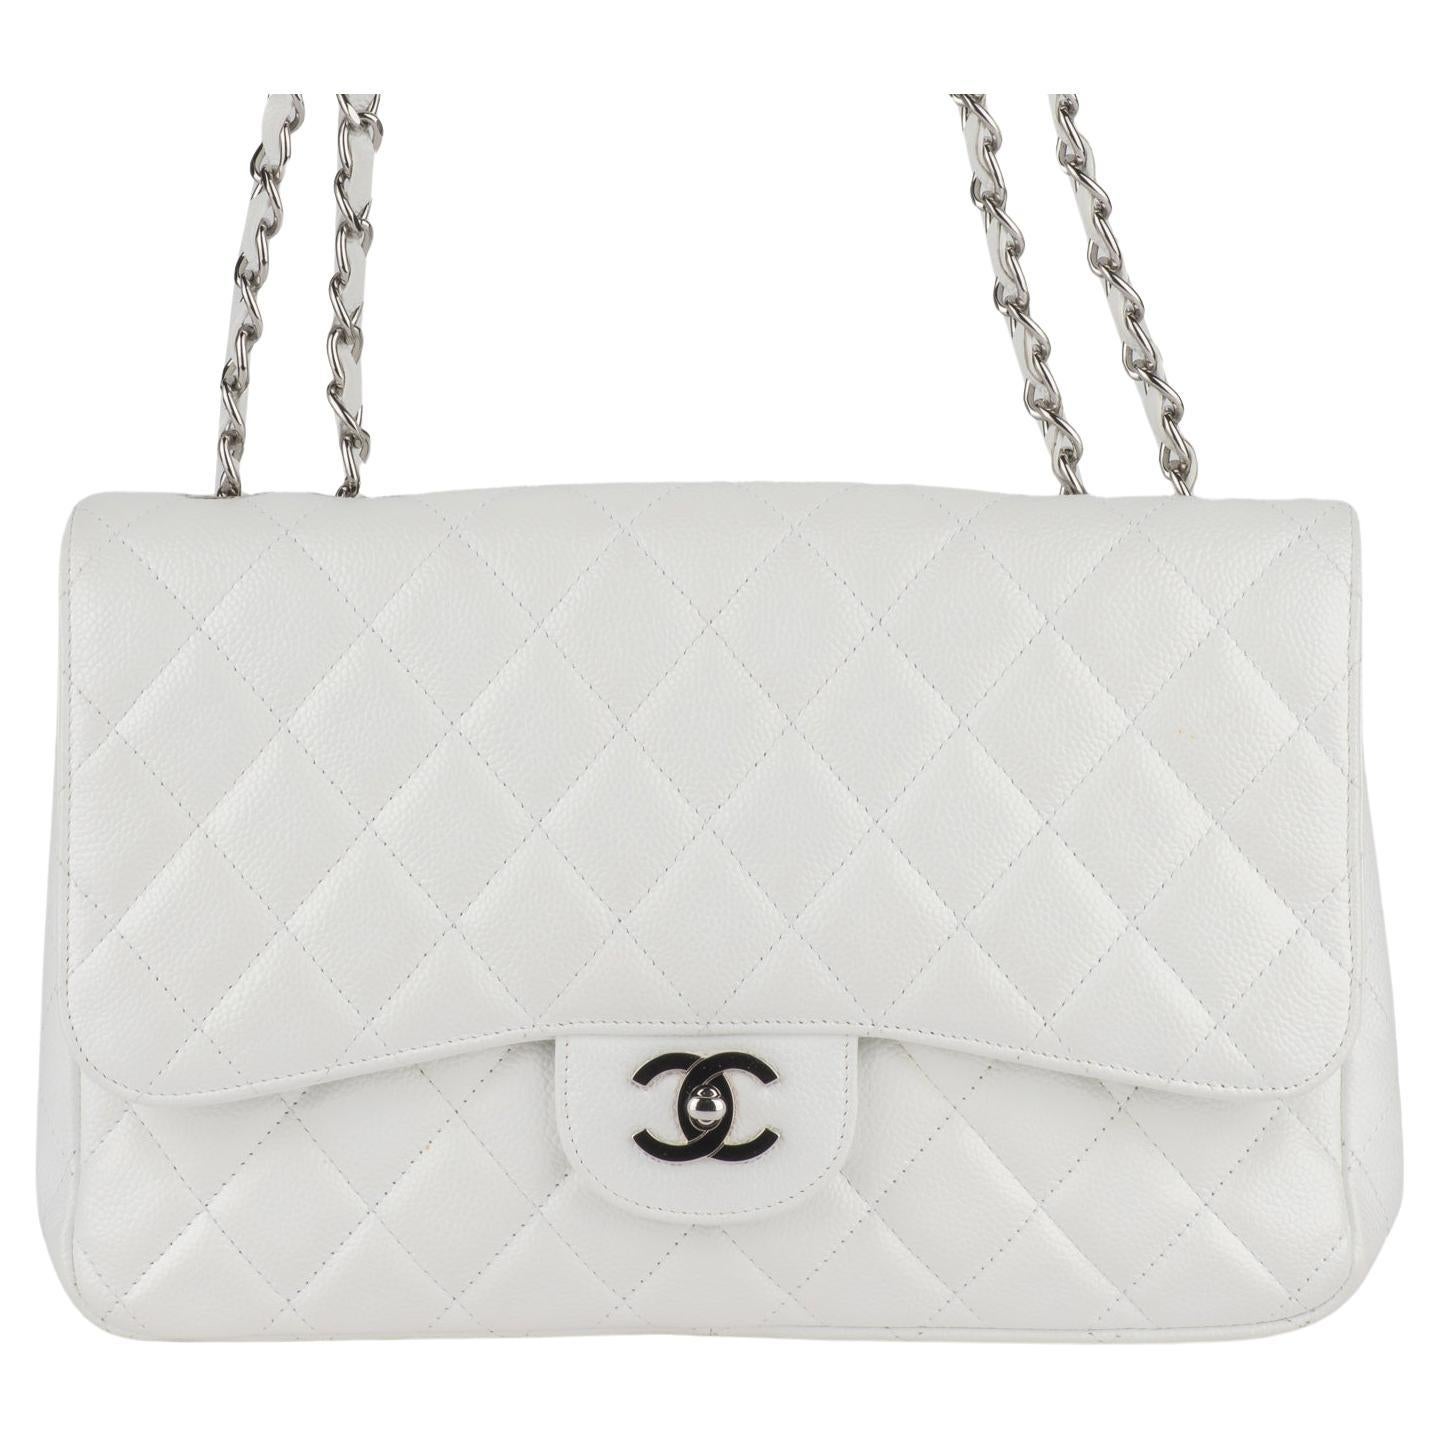 Le sac à rabat jumbo de Chanel est en cuir matelassé de diamants blancs. Une bandoulière à maillons en cuir argenté poli, une poche arrière plaquée et un cadenas CC classique argenté assorti. Cela permet d'ouvrir le sac et de révéler une poche